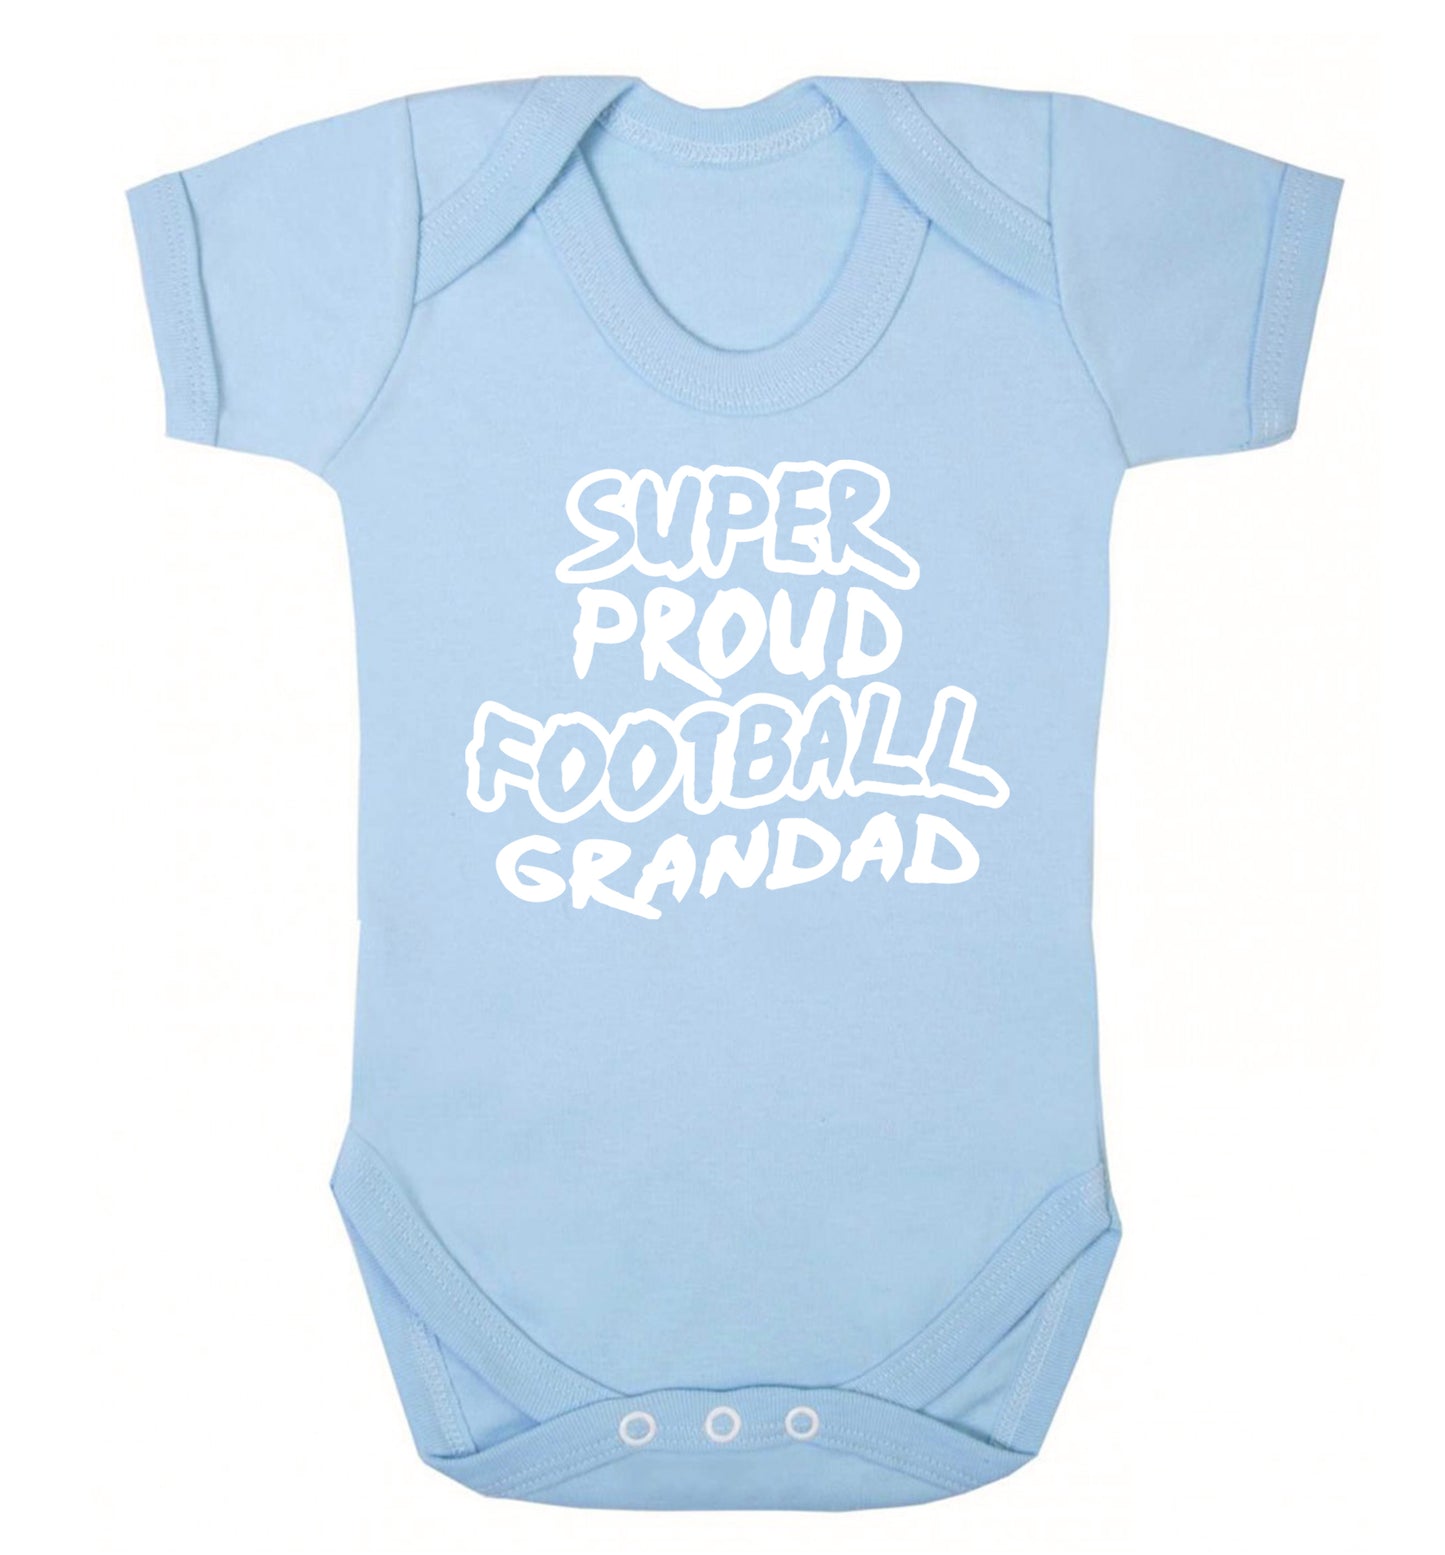 Super proud football grandad Baby Vest pale blue 18-24 months